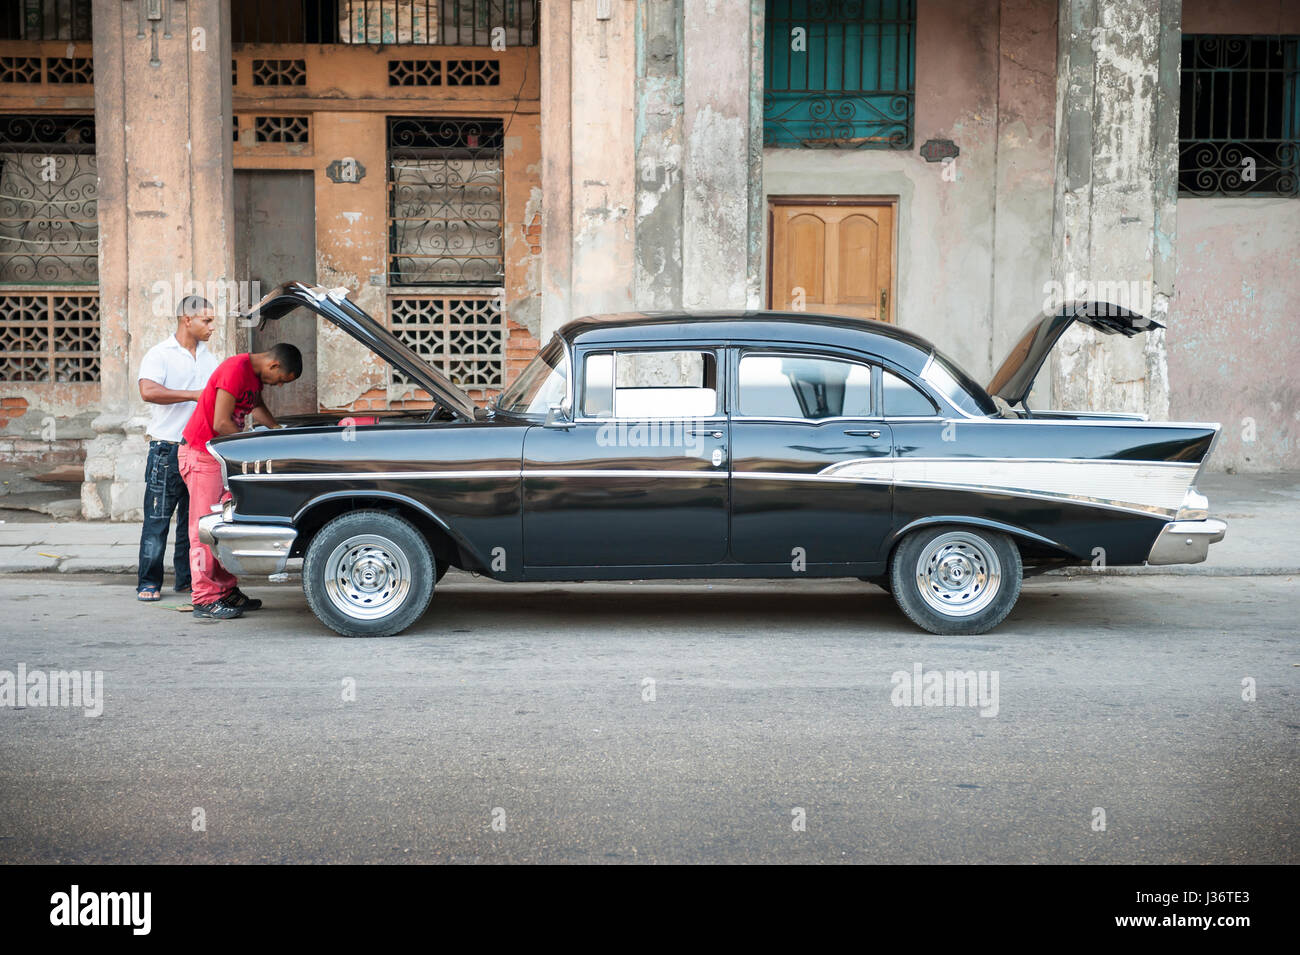 - La Havane, juin 2011 : hommes cubains d'oeil dans le moteur d'une vieille voiture américaine en tant qu'ils effectuent l'entretien de la rue. Banque D'Images